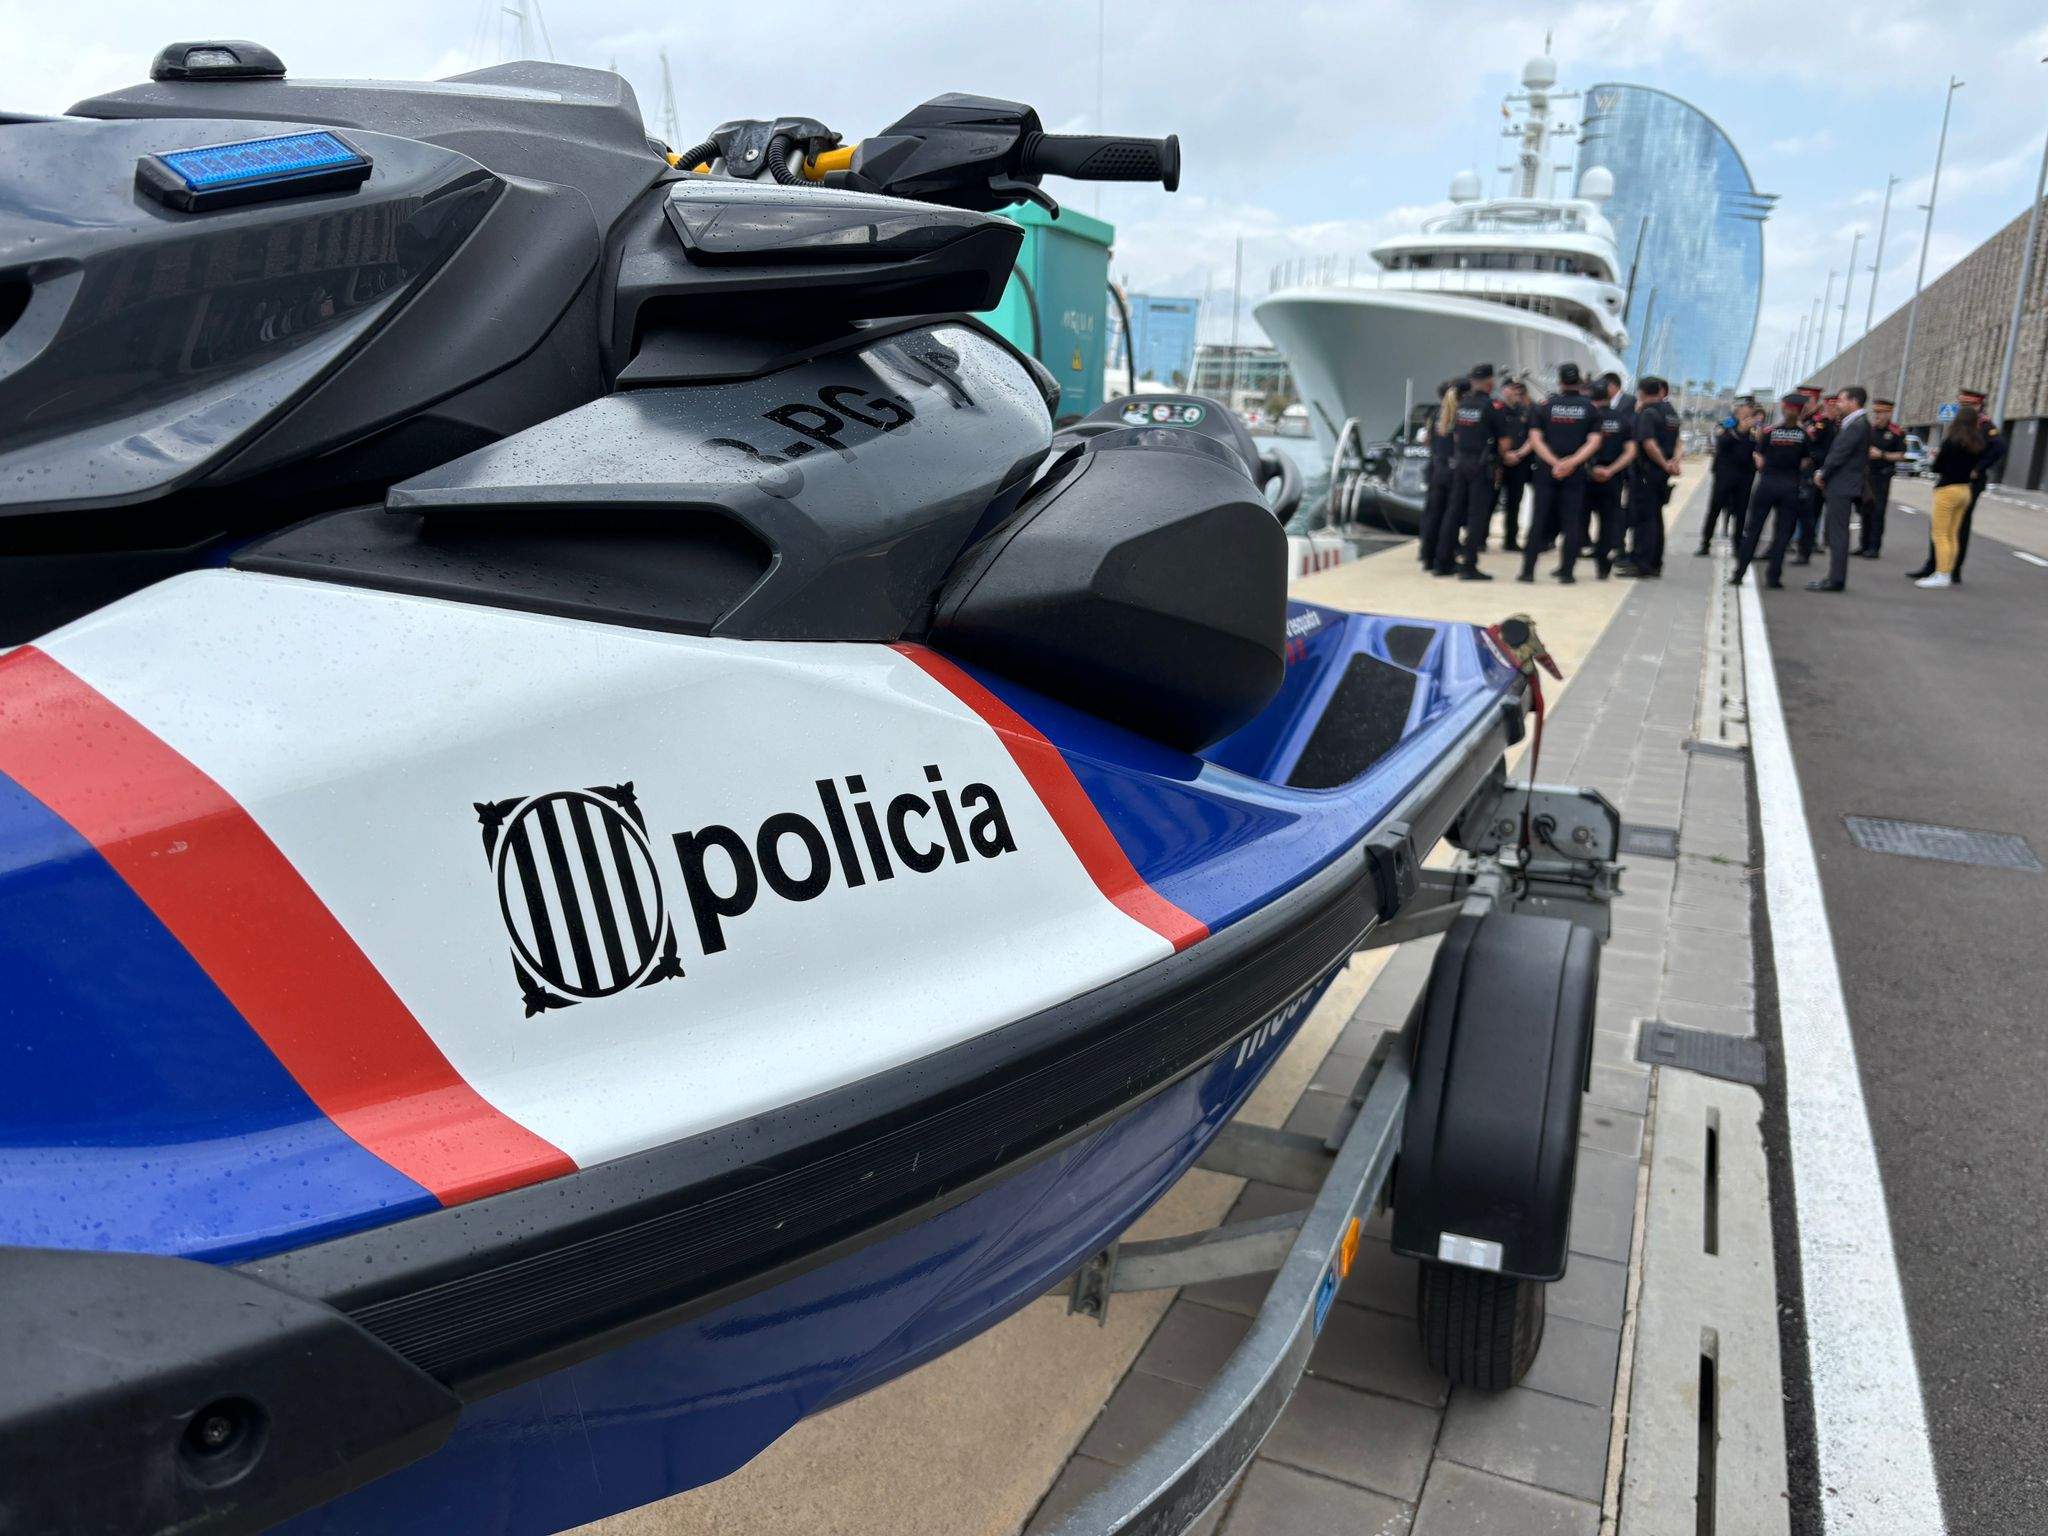 La Policia Marítima dels Mossos desembarca al Port de Barcelona amb l'excusa de la Copa Amèrica